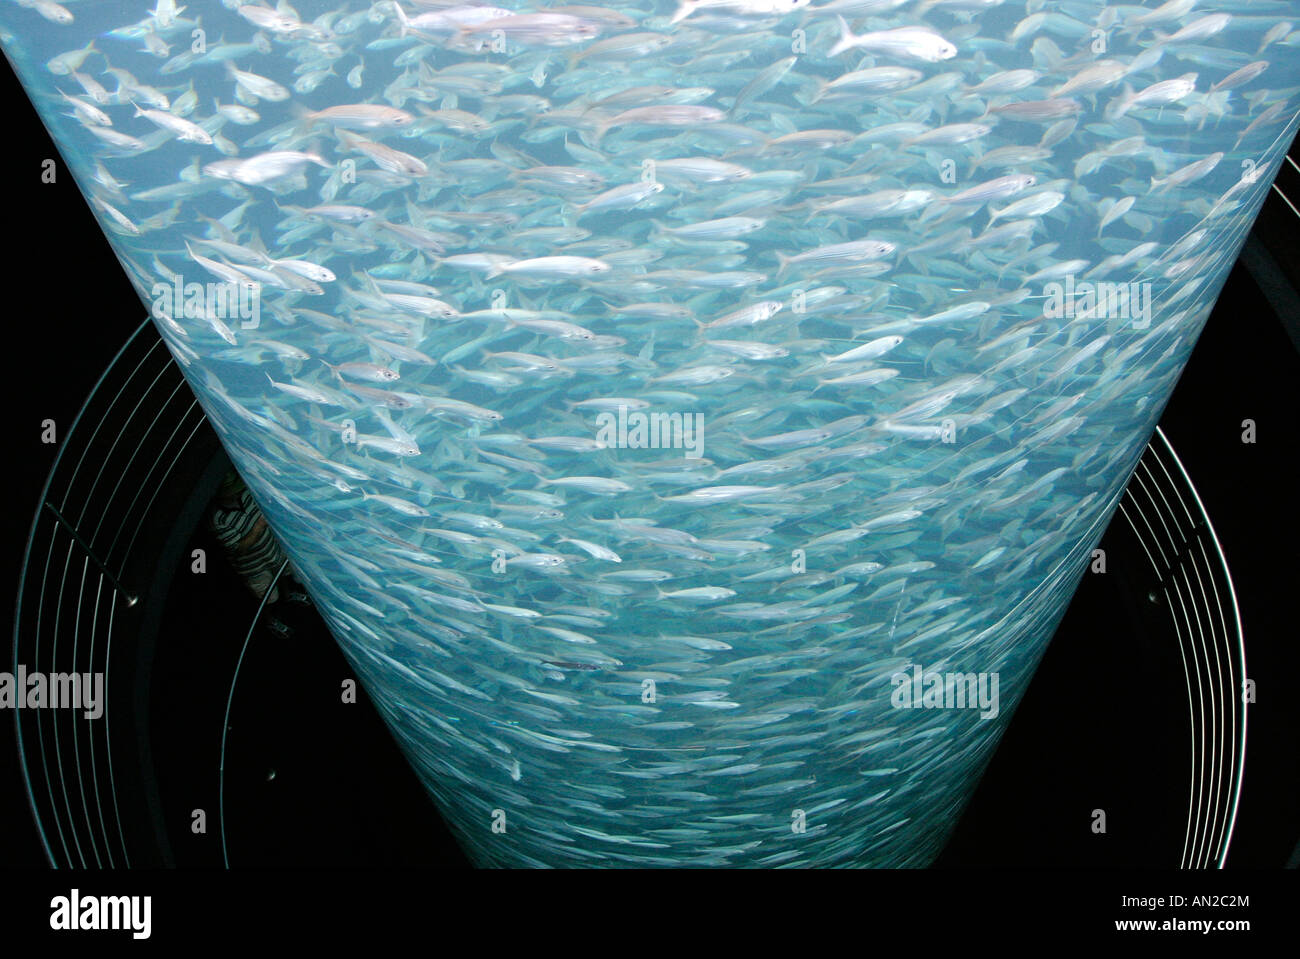 Kanaren Teneriffa Loro Park Unterwasserwelt Fische schwimmen im Kreis in einem Wasserzylinder Stock Photo